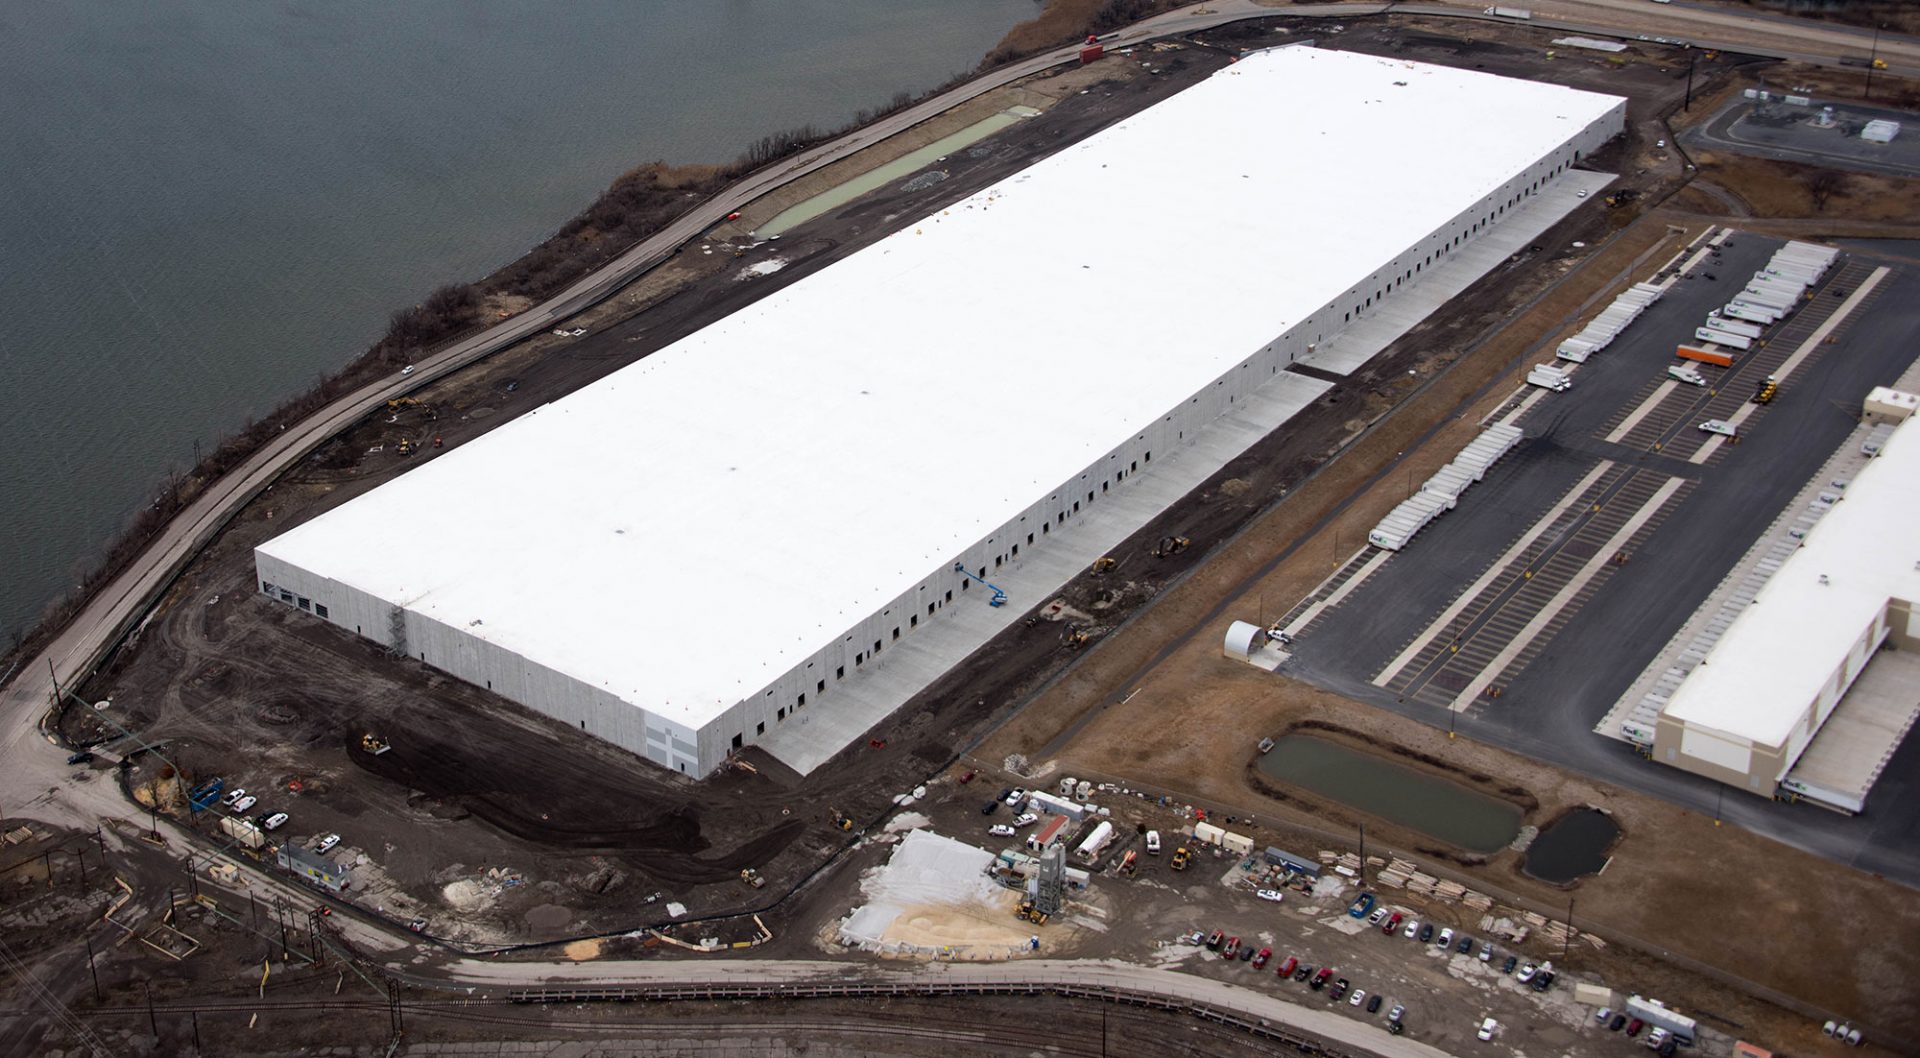 large warehouse